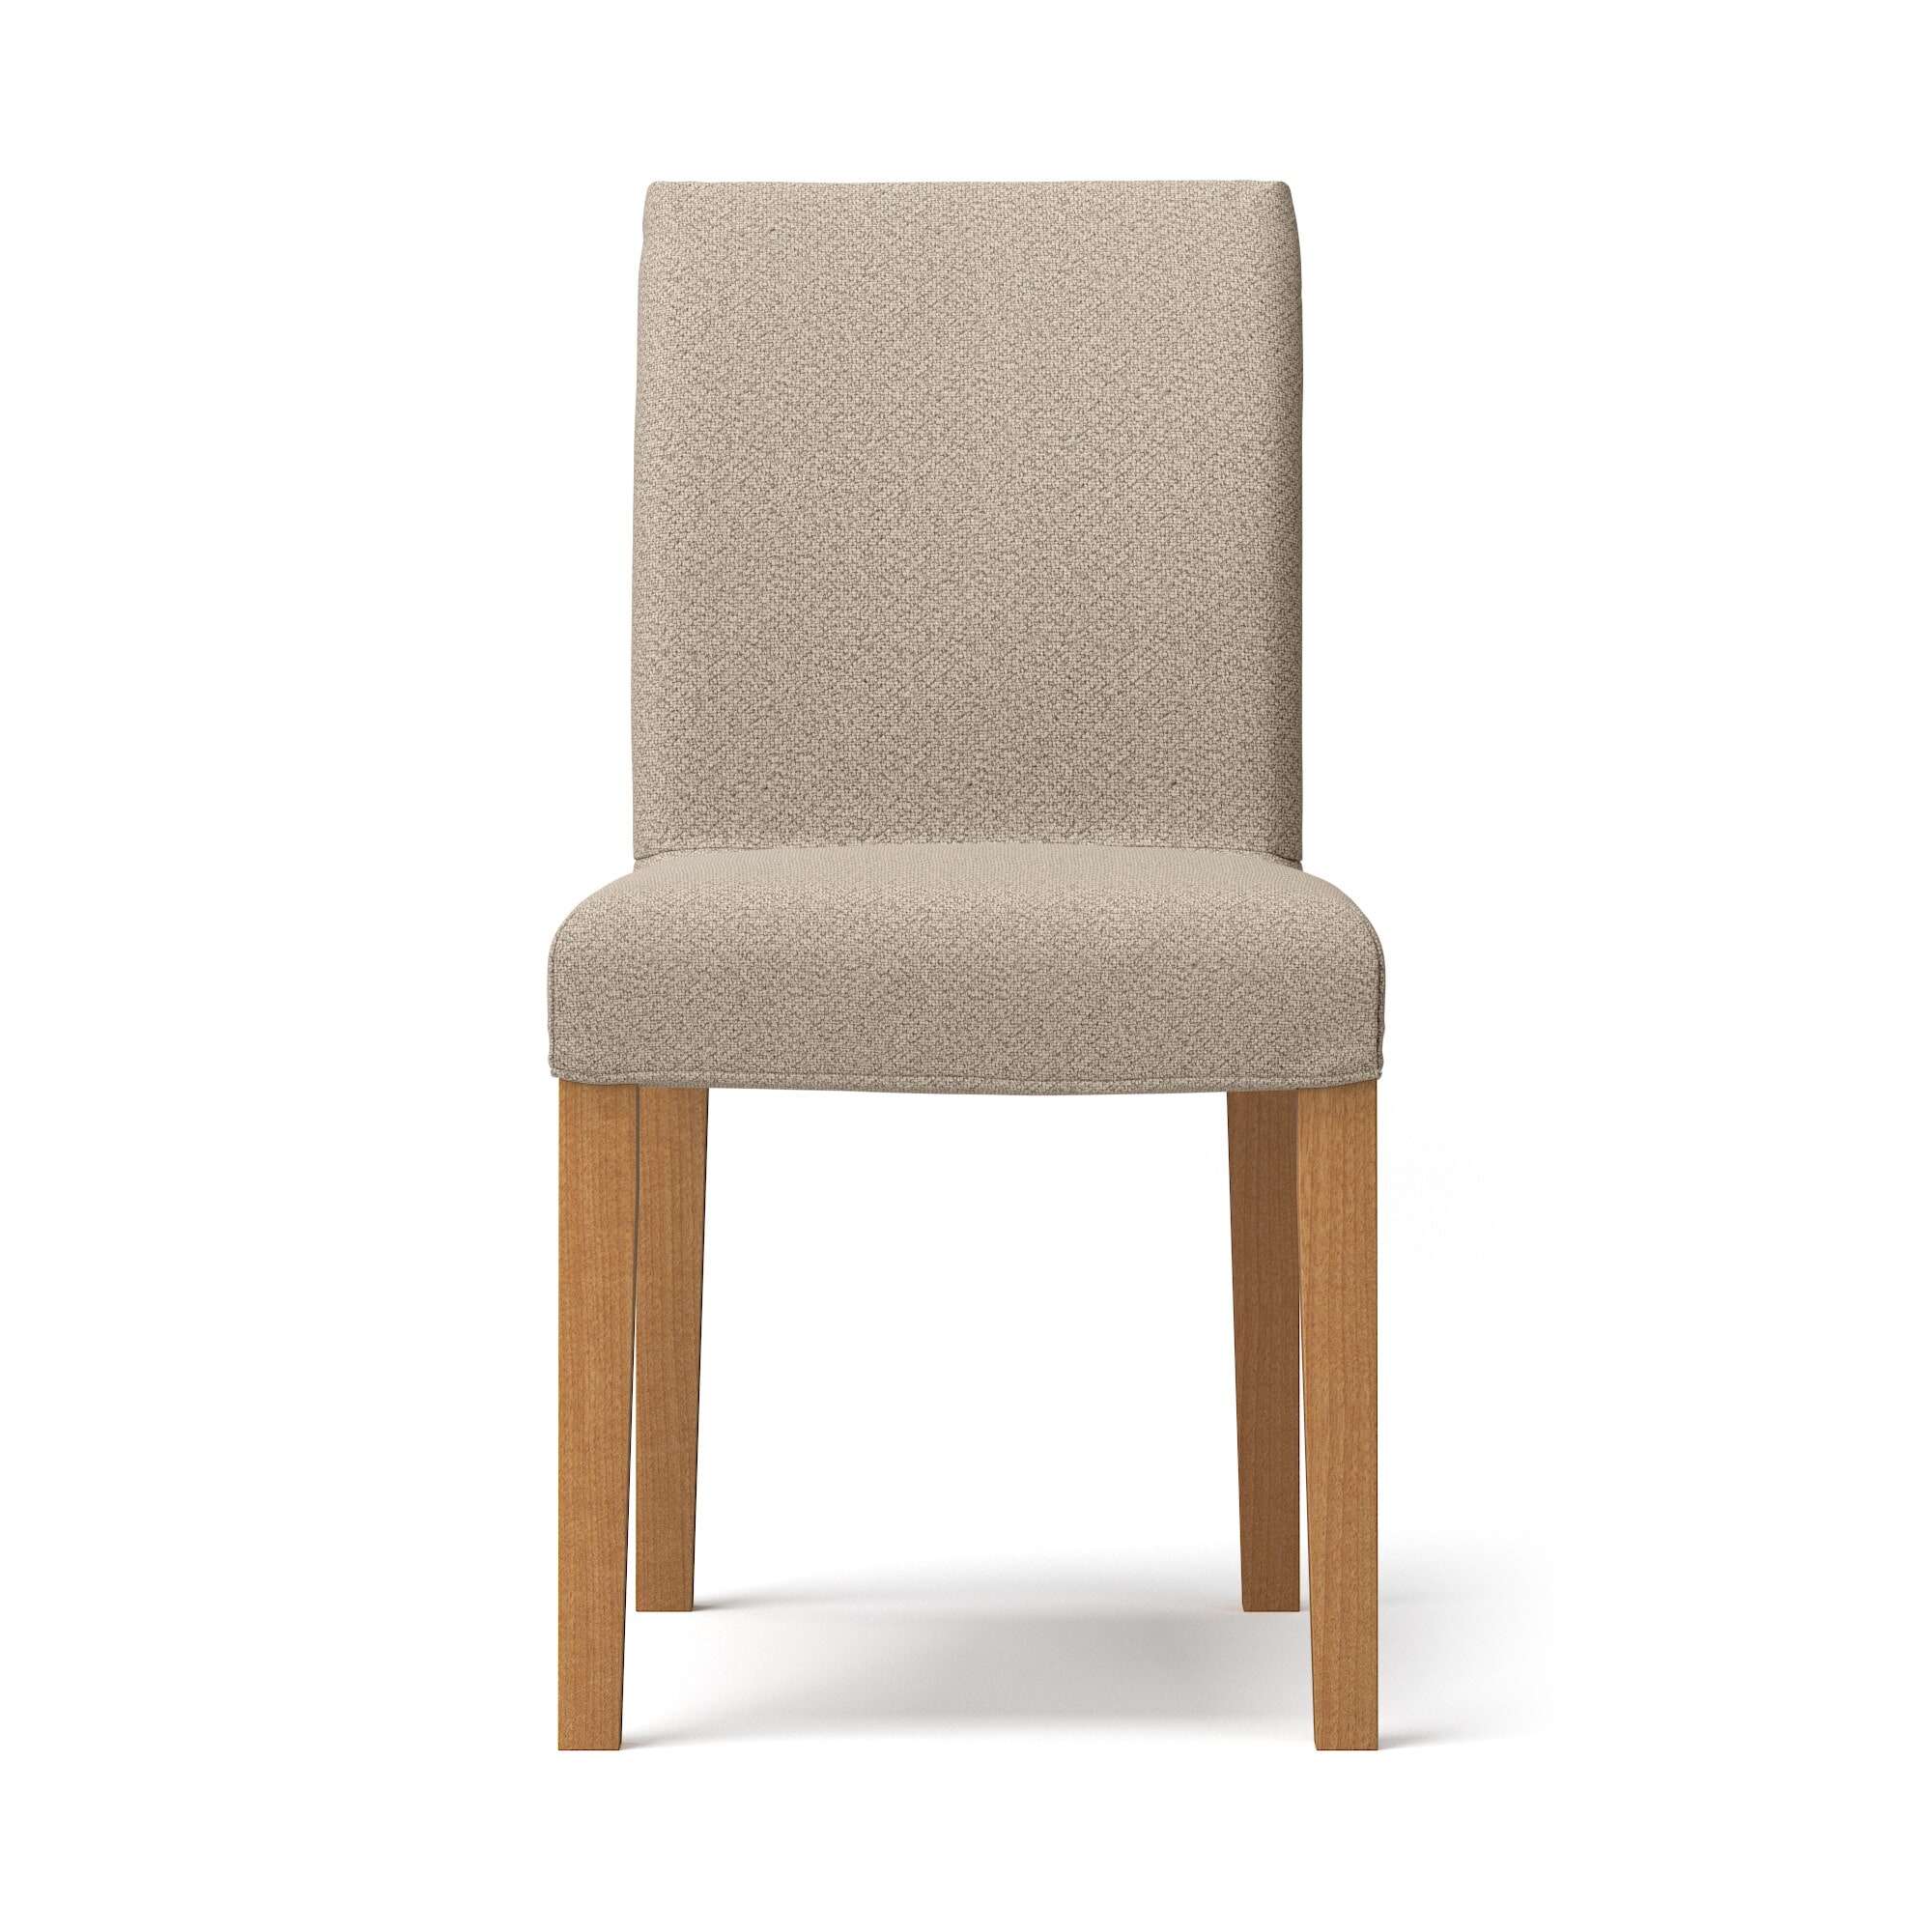 무인양품 일본 패브릭 쿠션 원목 다리 의자 커버